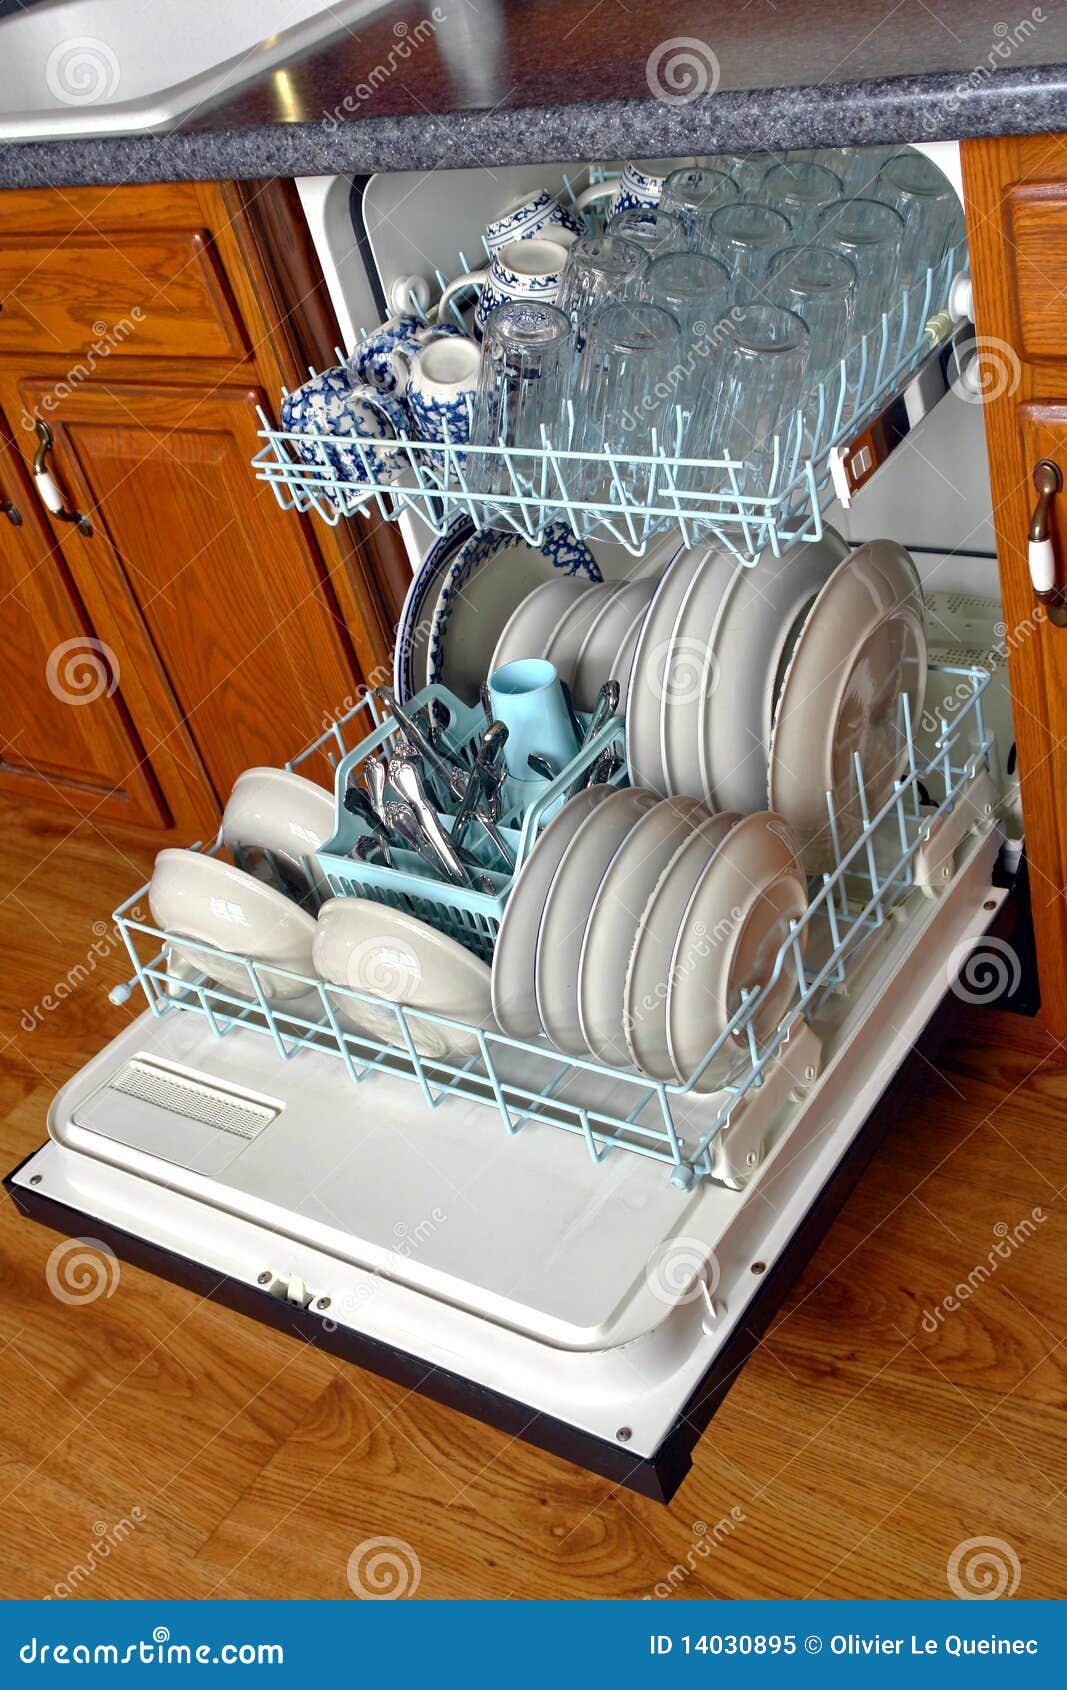 house dishwasher